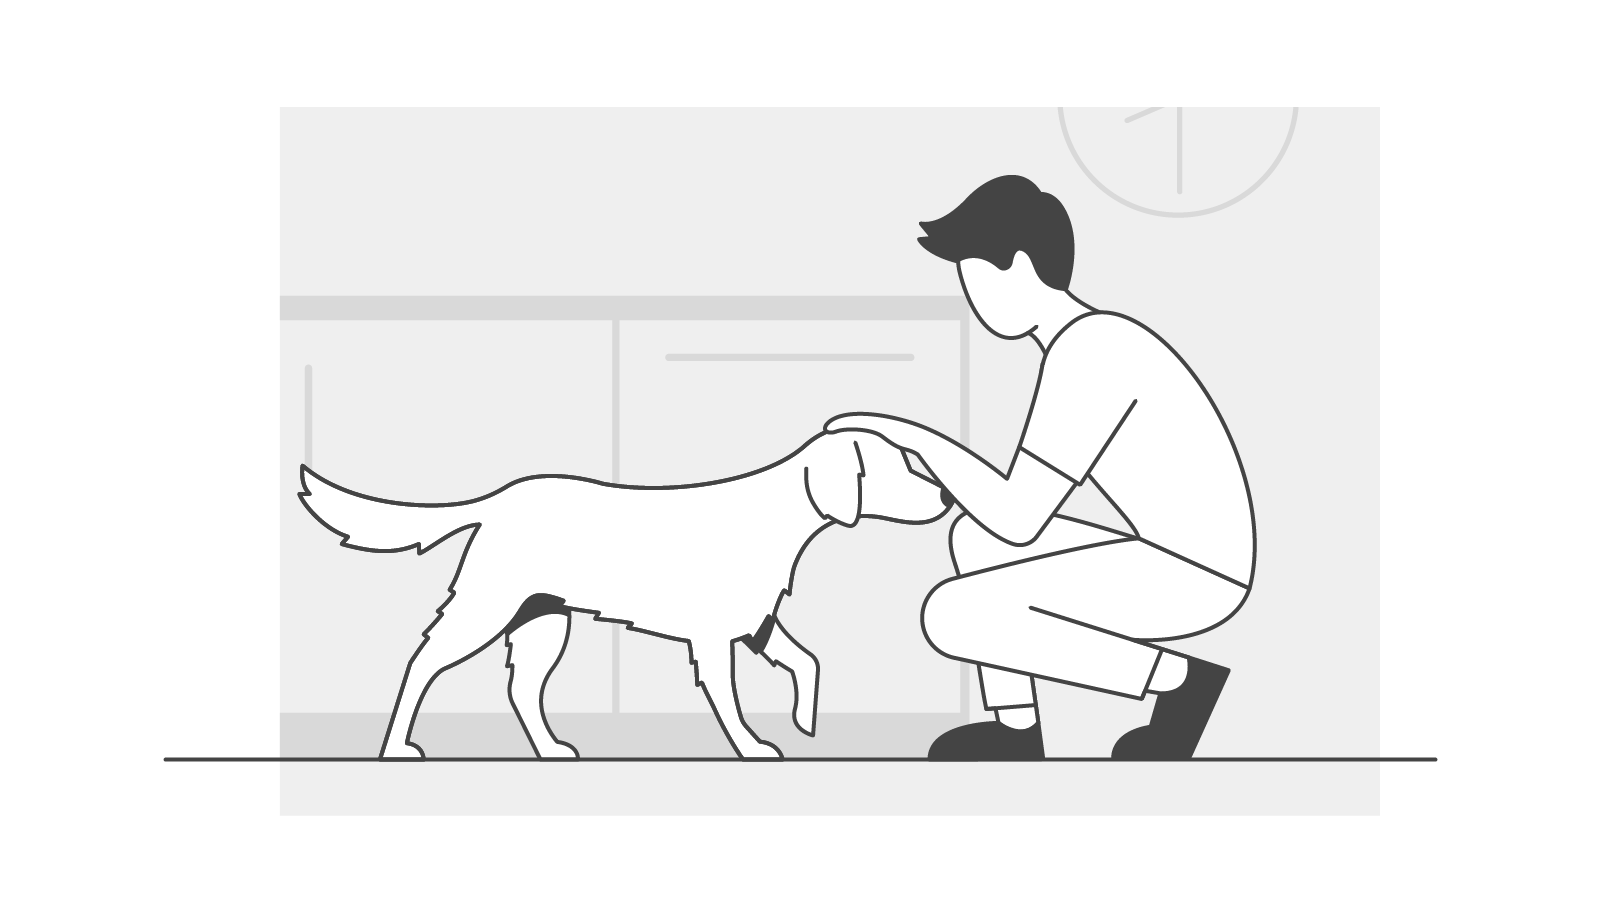 Man stroking a dog illustration